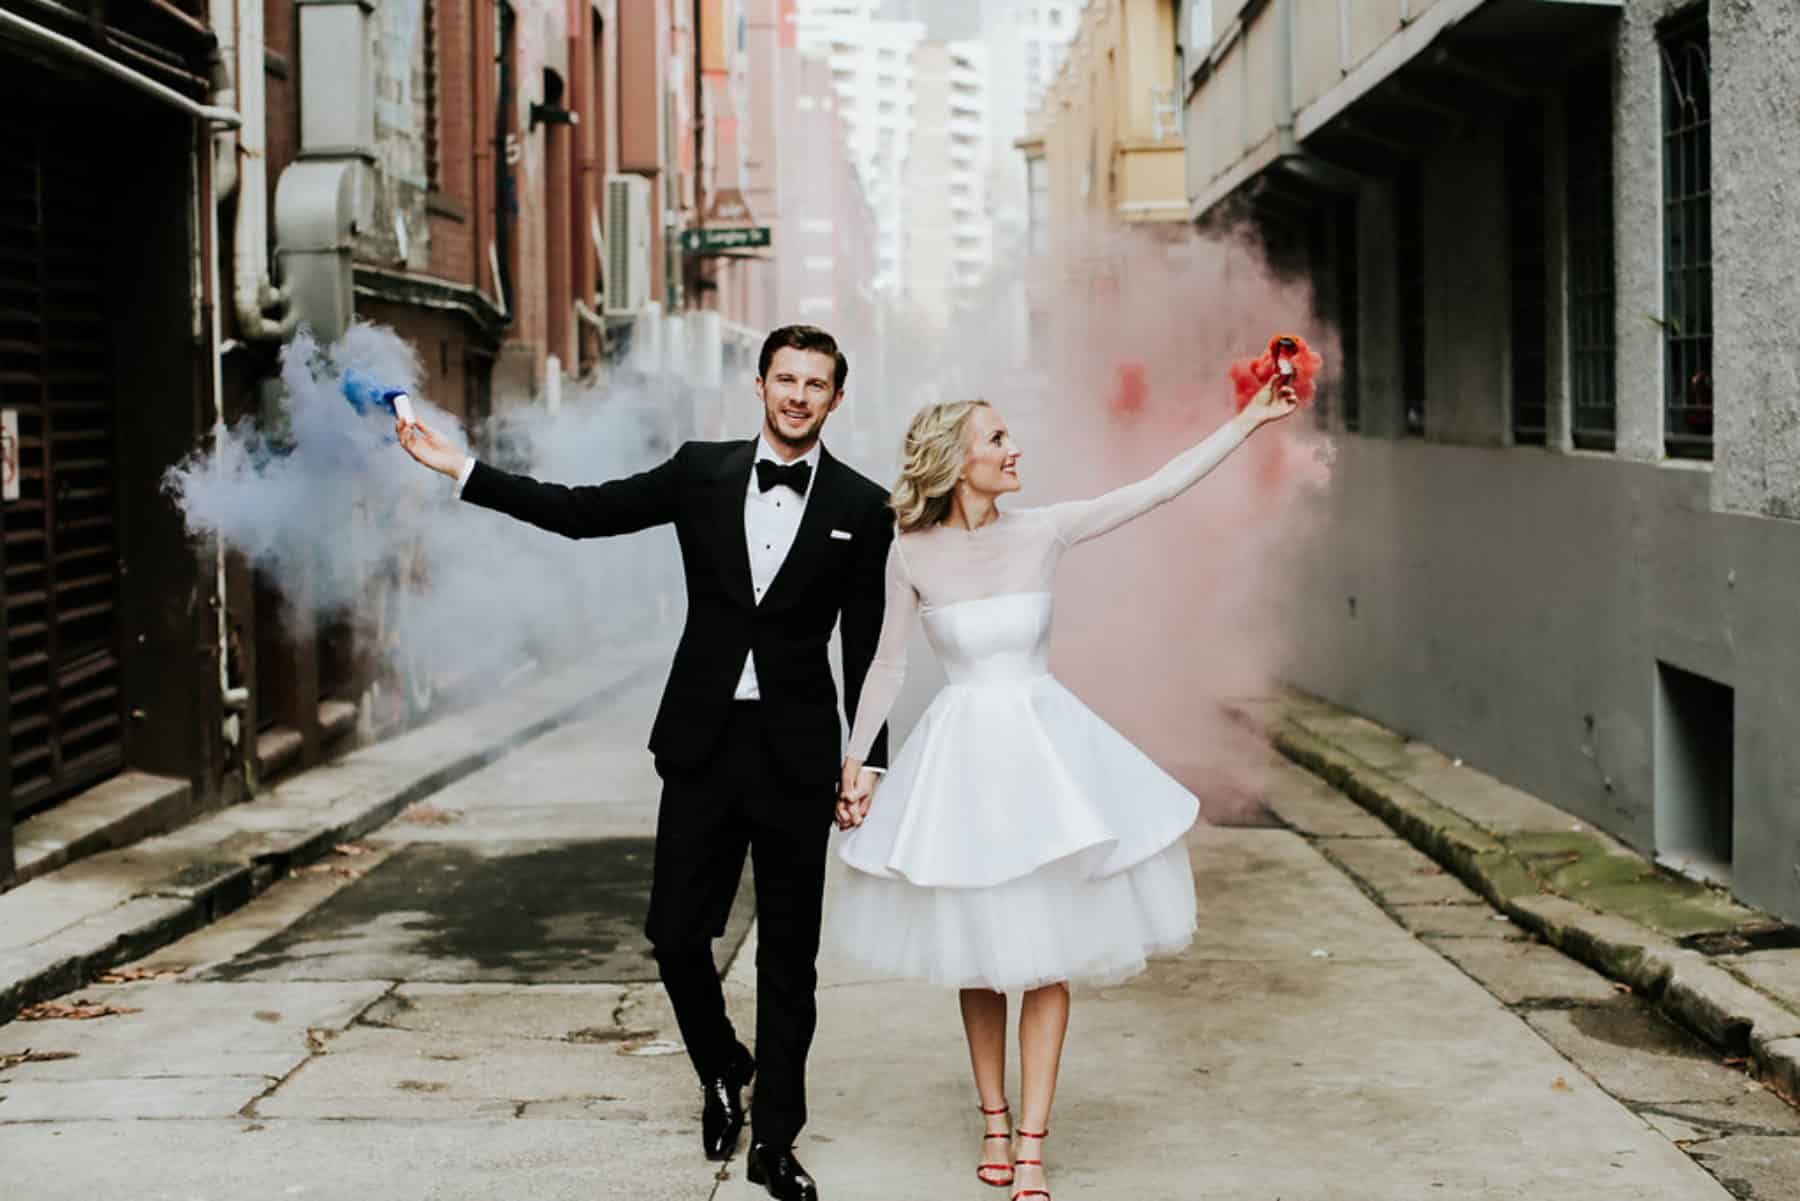 Colourful Sydney wedding with smoke bombs - Lara Hotz Photography